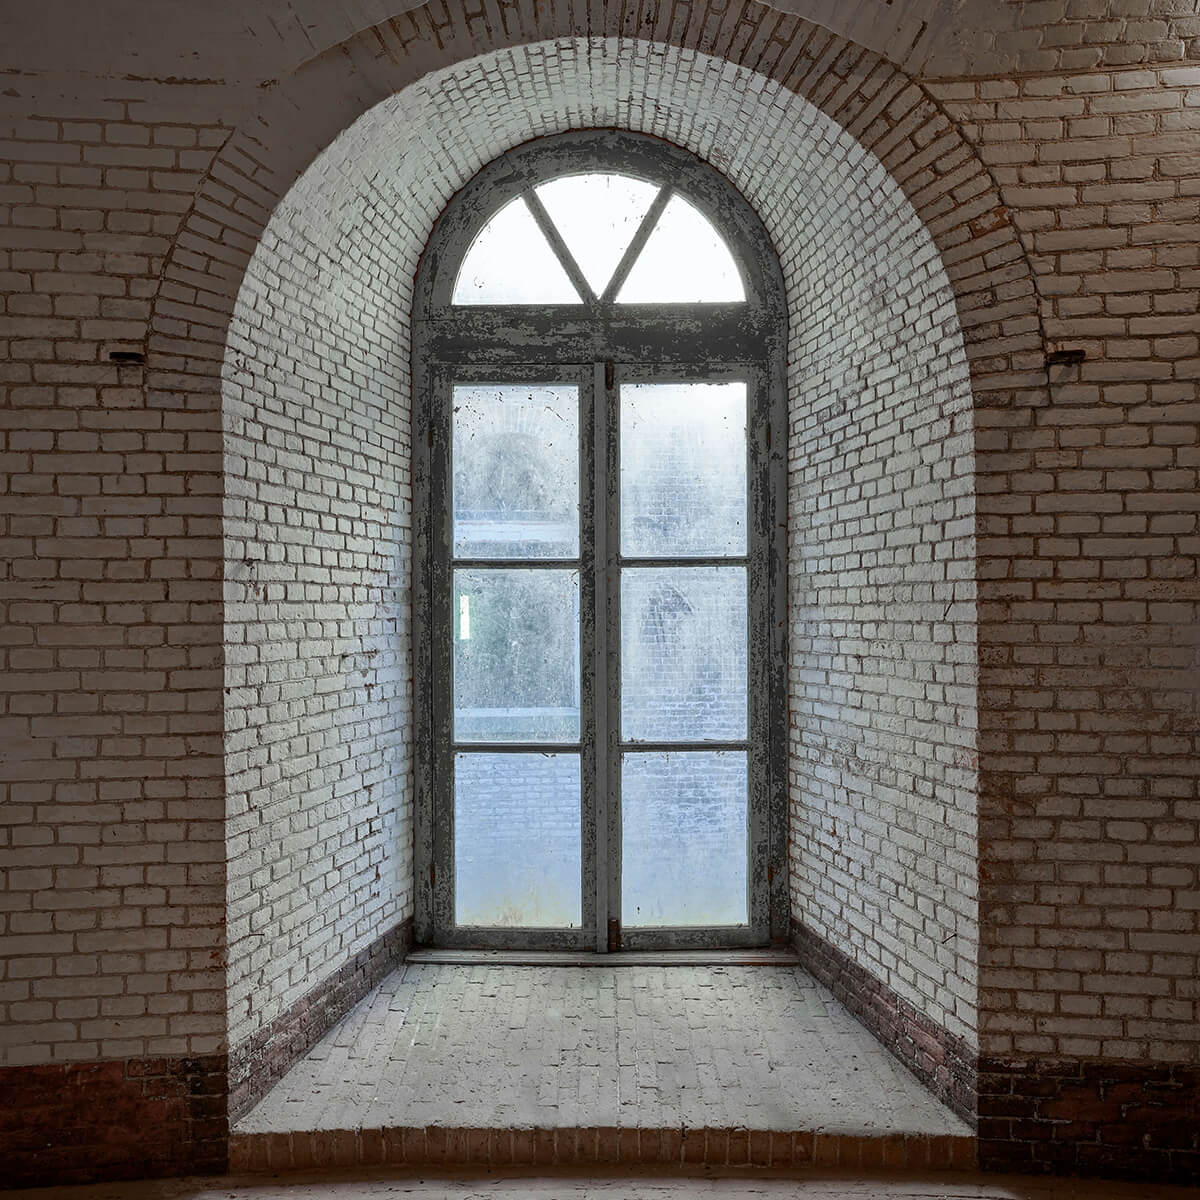 Window in alcove